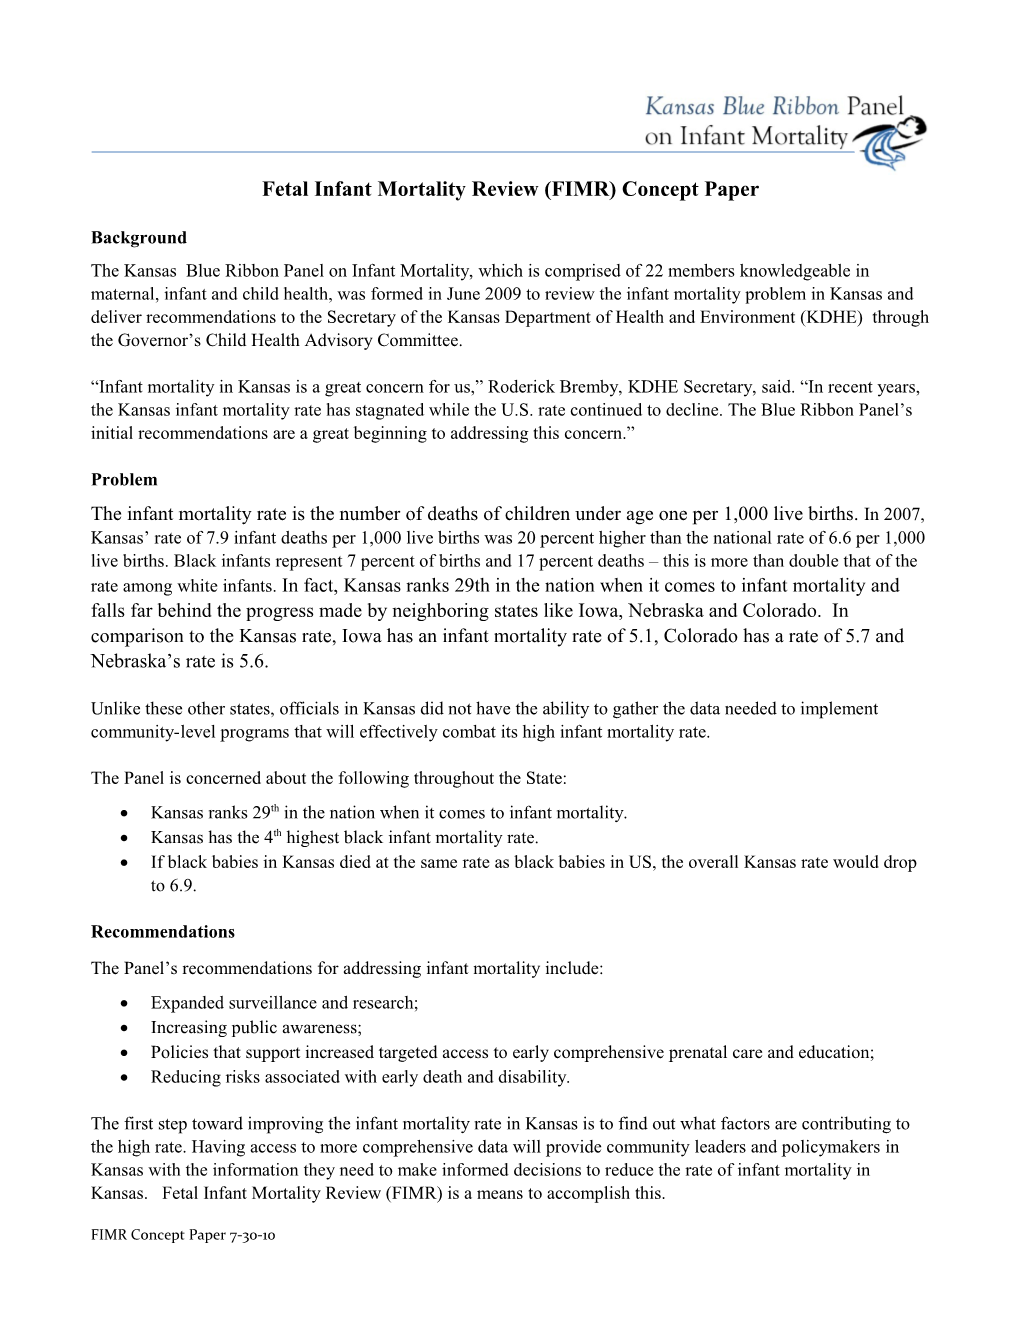 Fetal Infant Mortality Review (FIMR) Concept Paper